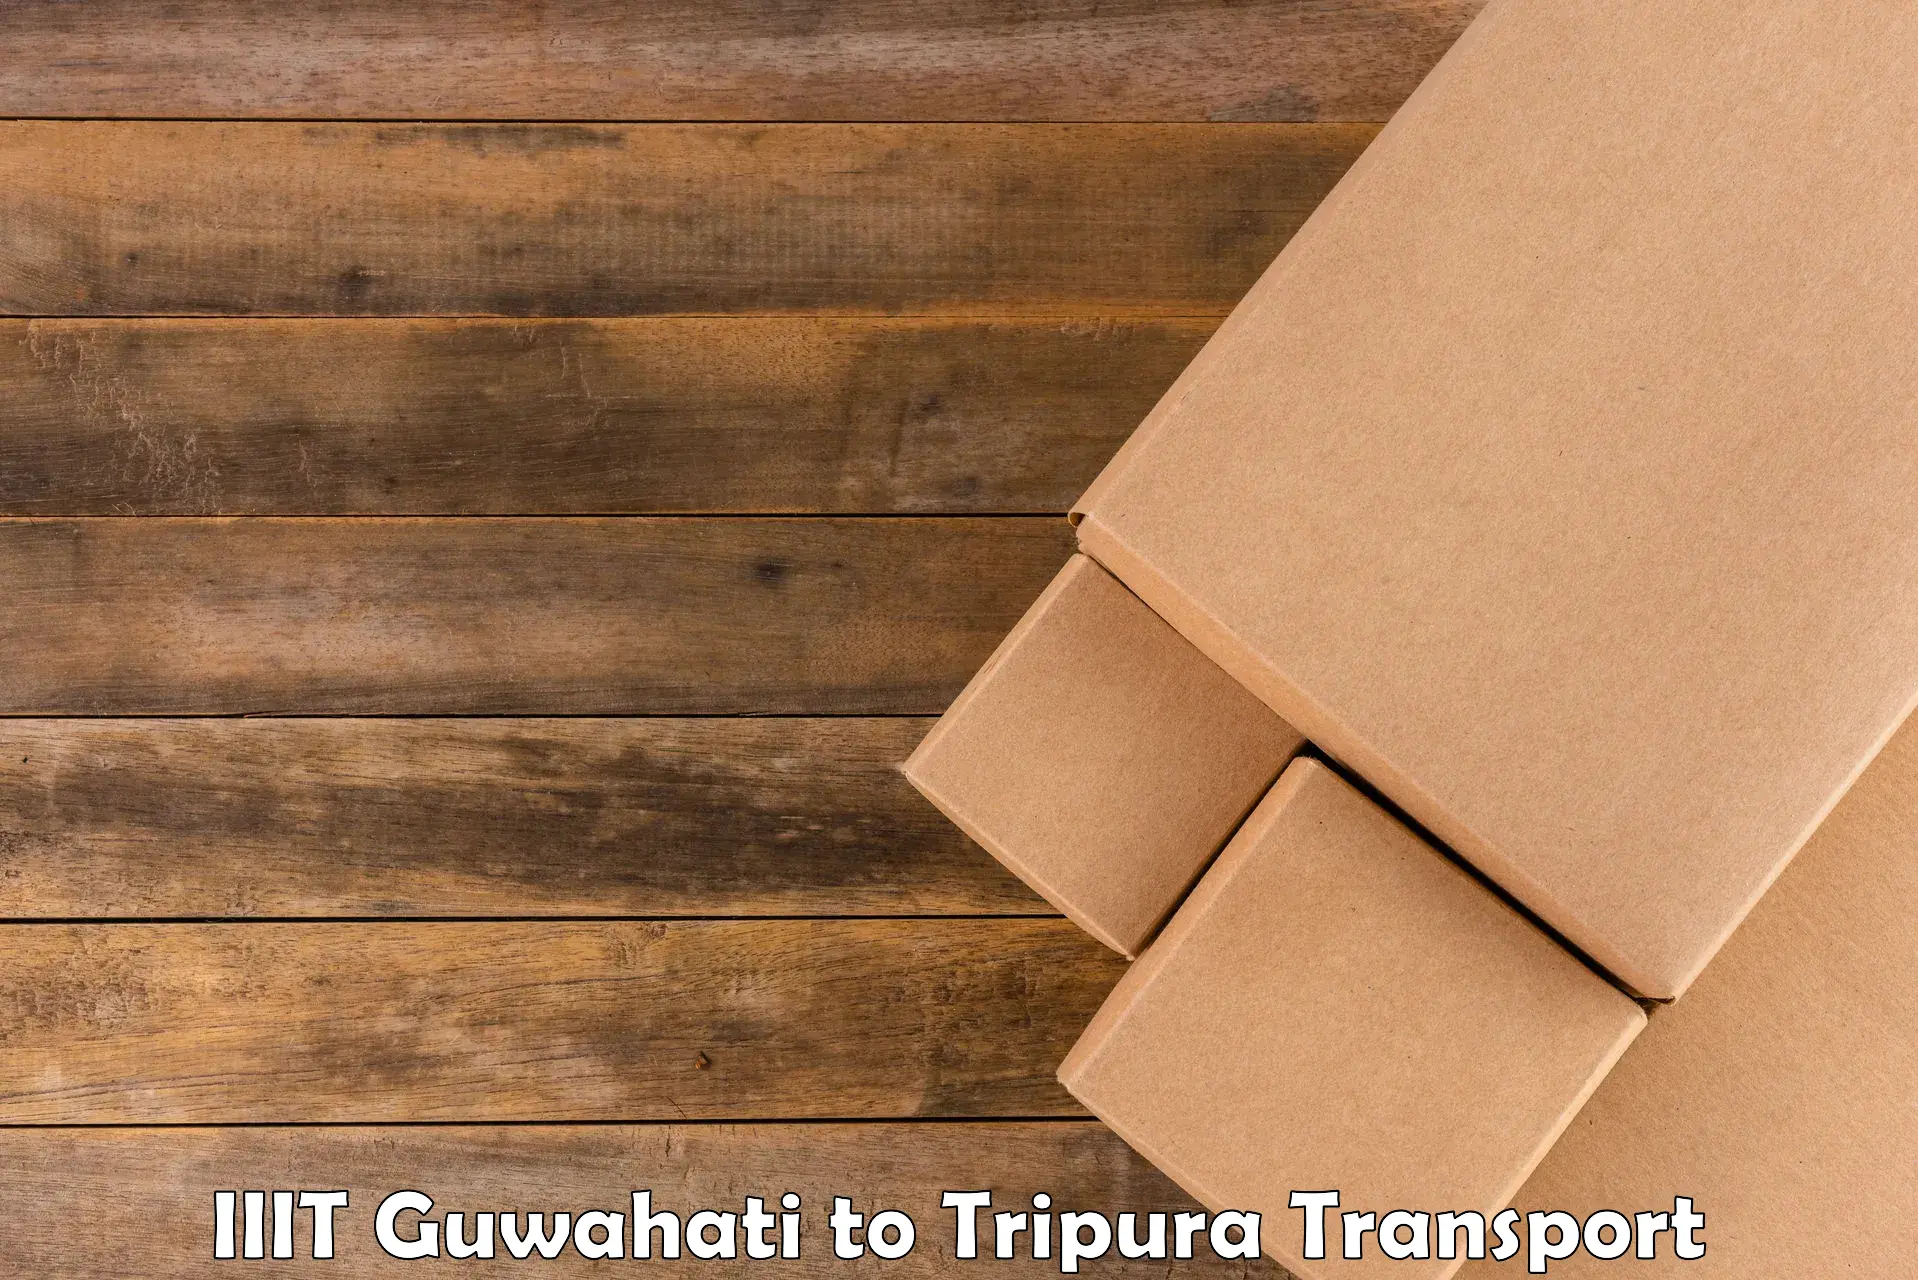 Bike transfer in IIIT Guwahati to Tripura